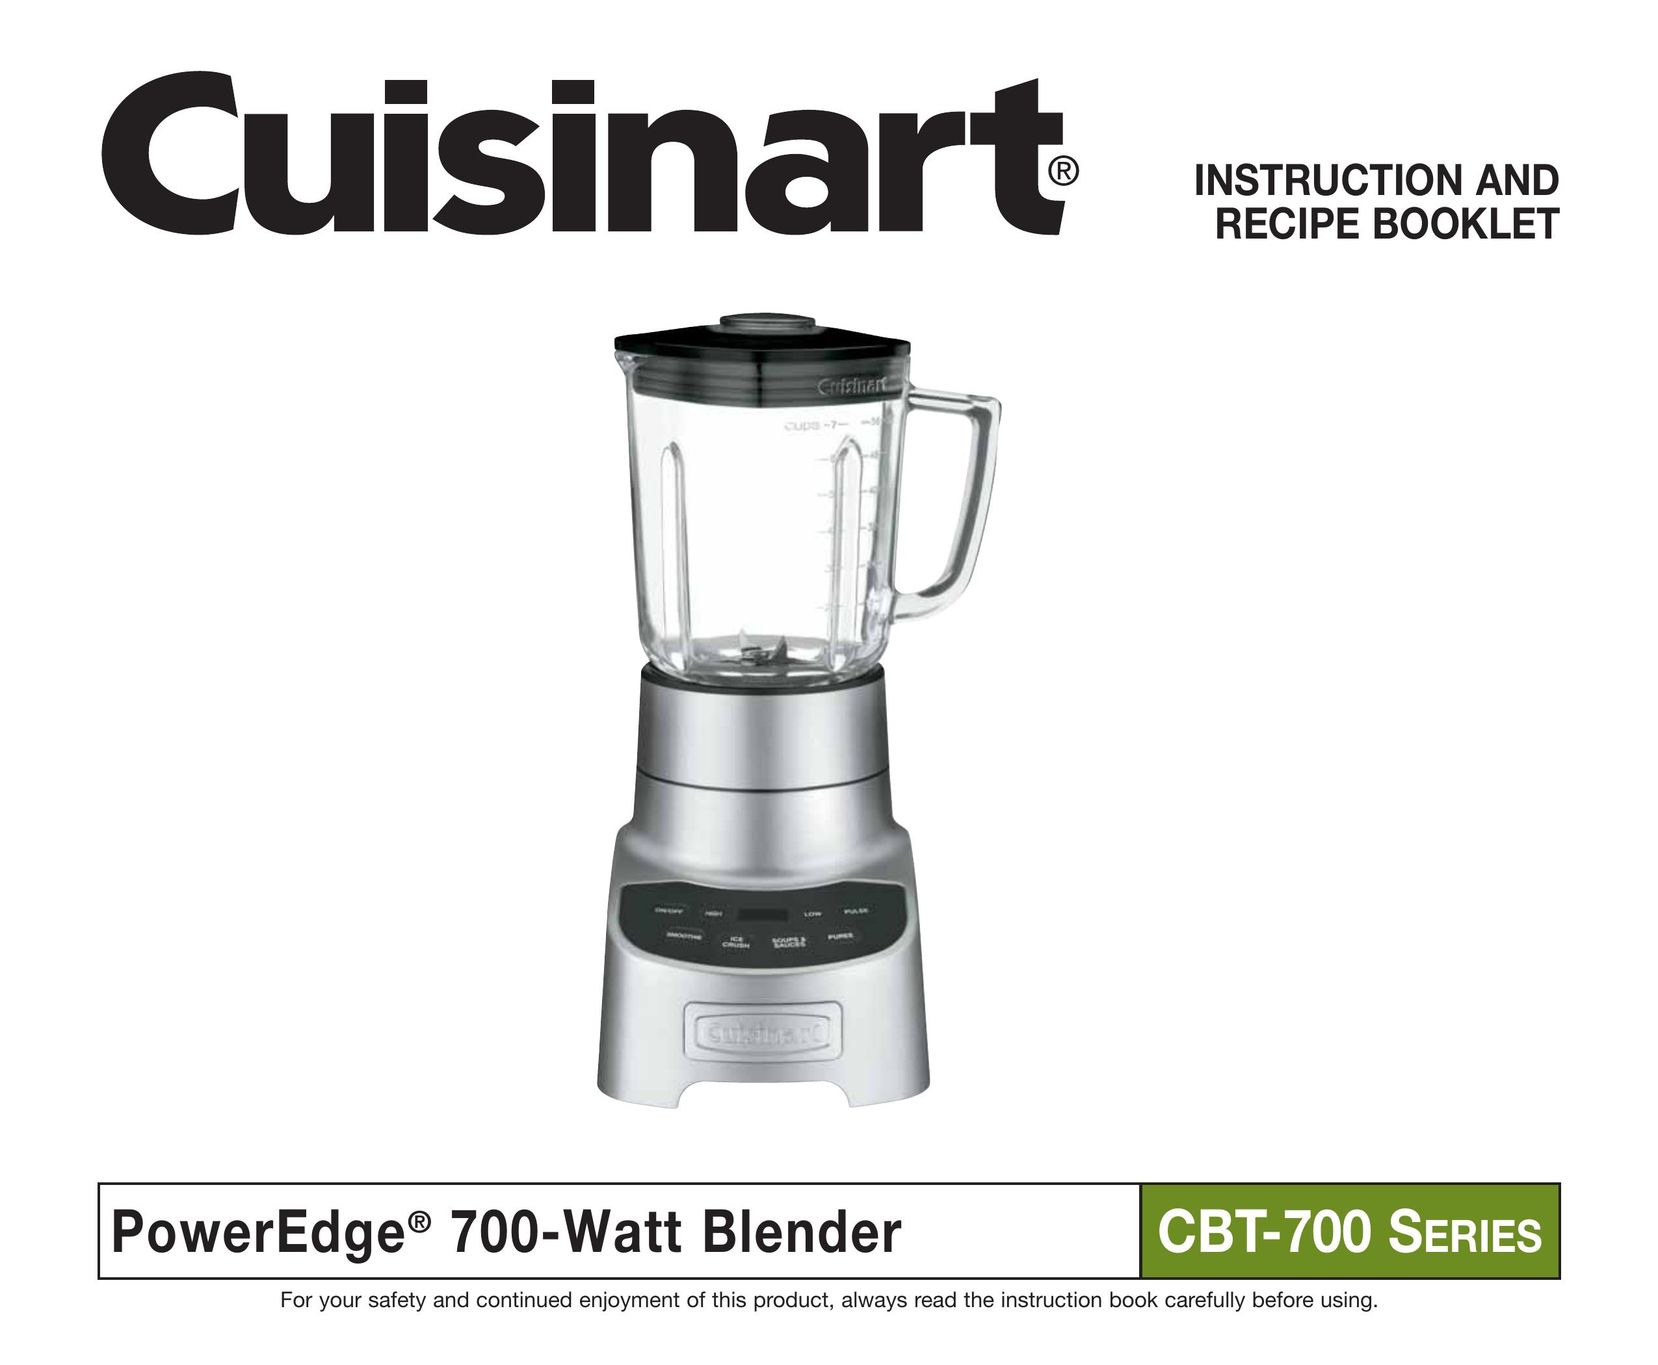 Cuisinart CBT-700 Series Blender User Manual